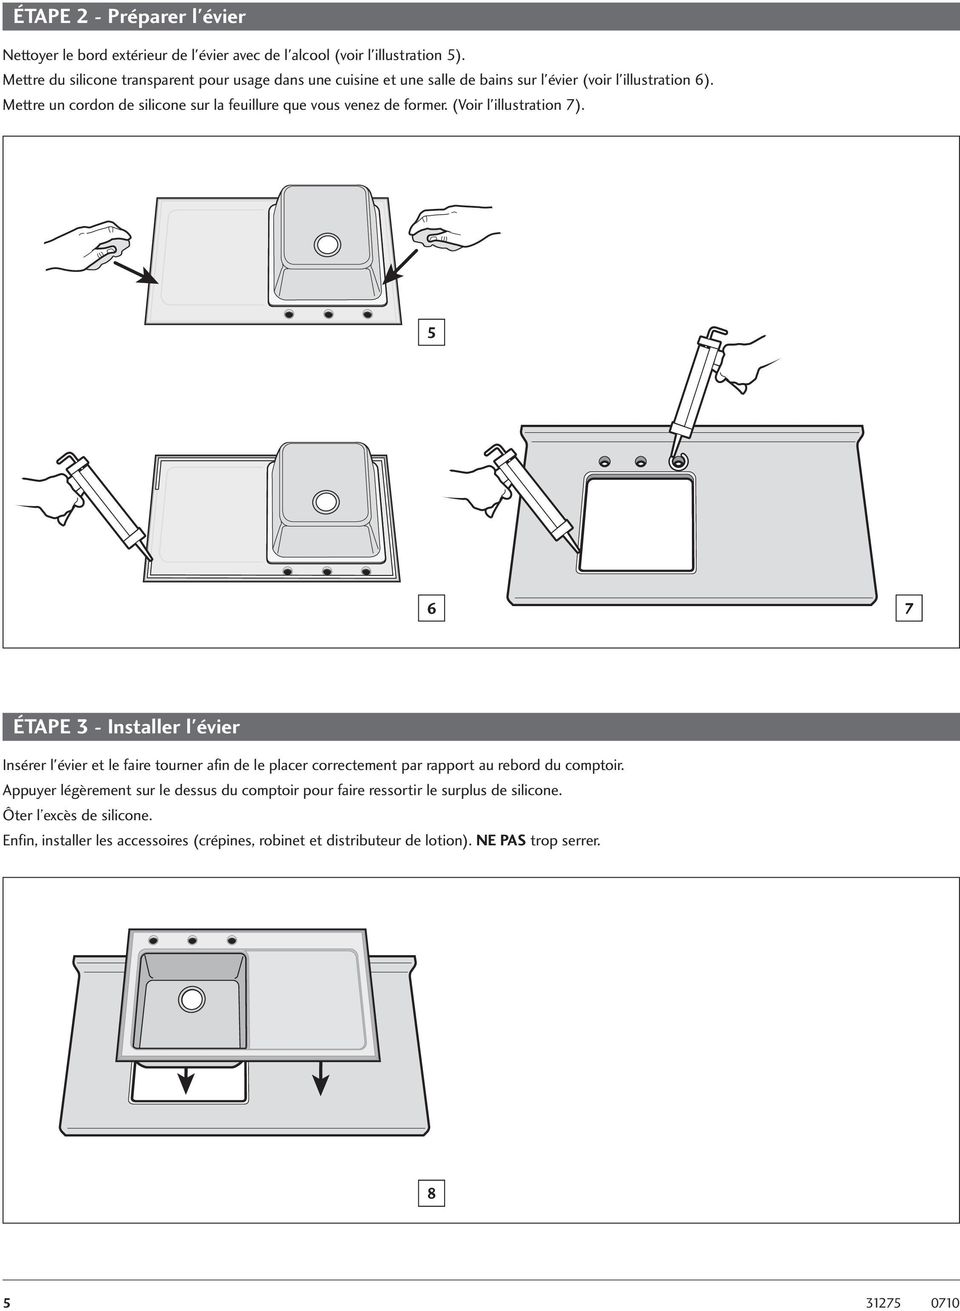 Mettre un cordon de silicone sur la feuillure que vous venez de former. (Voir l'illustration 7).